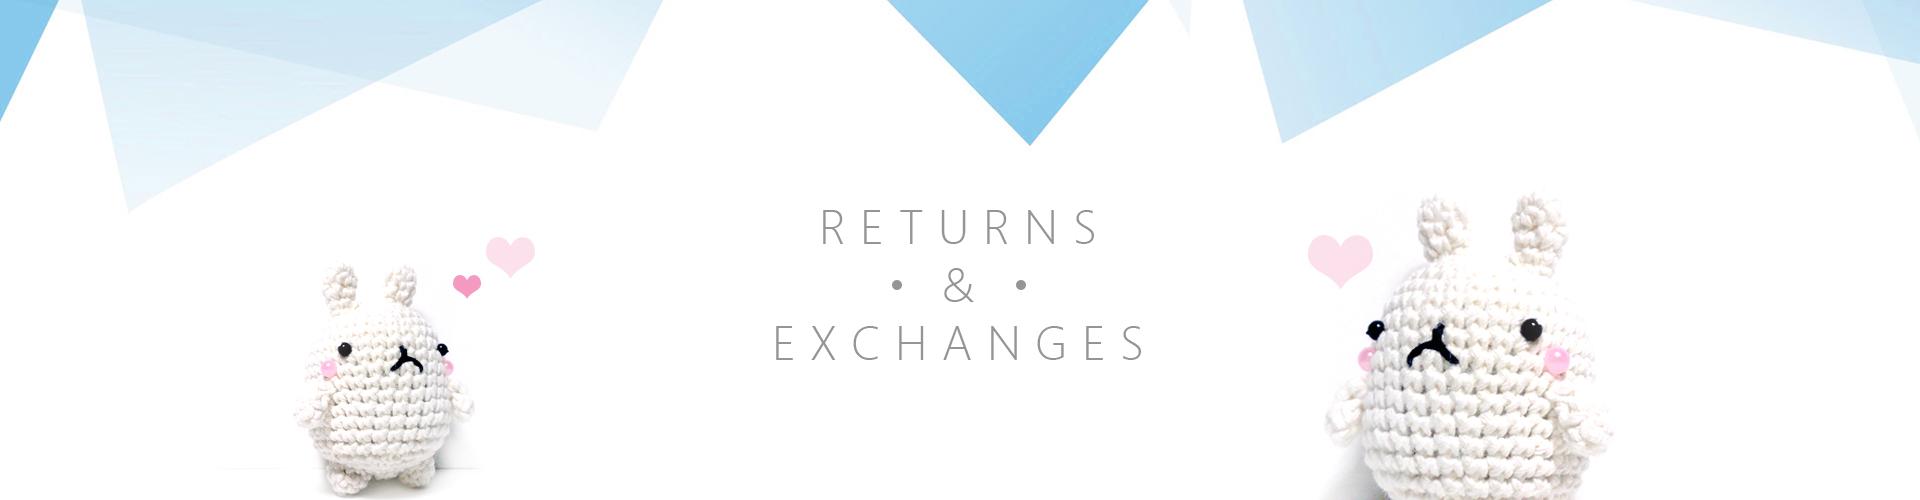 returns & exchange